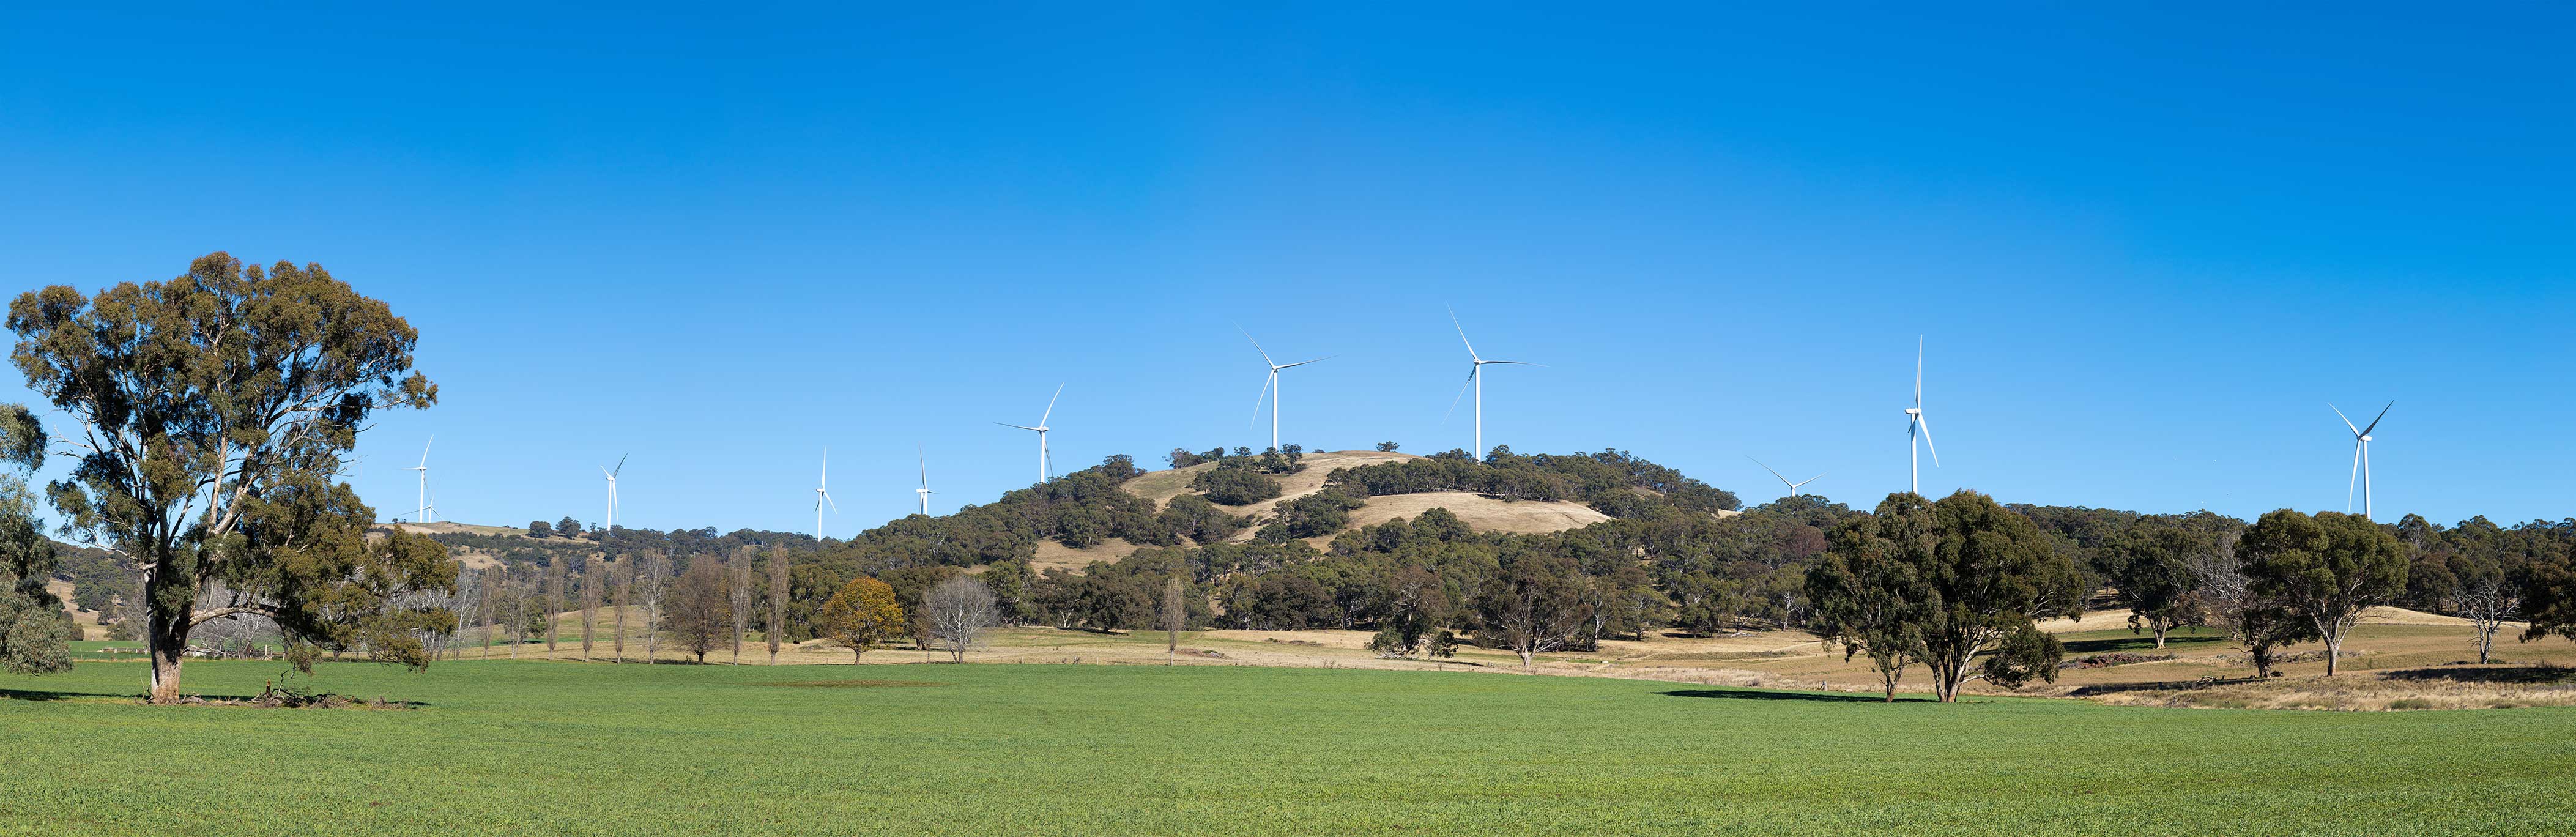 澳大利亚白石风电场一期17.5万千瓦项目